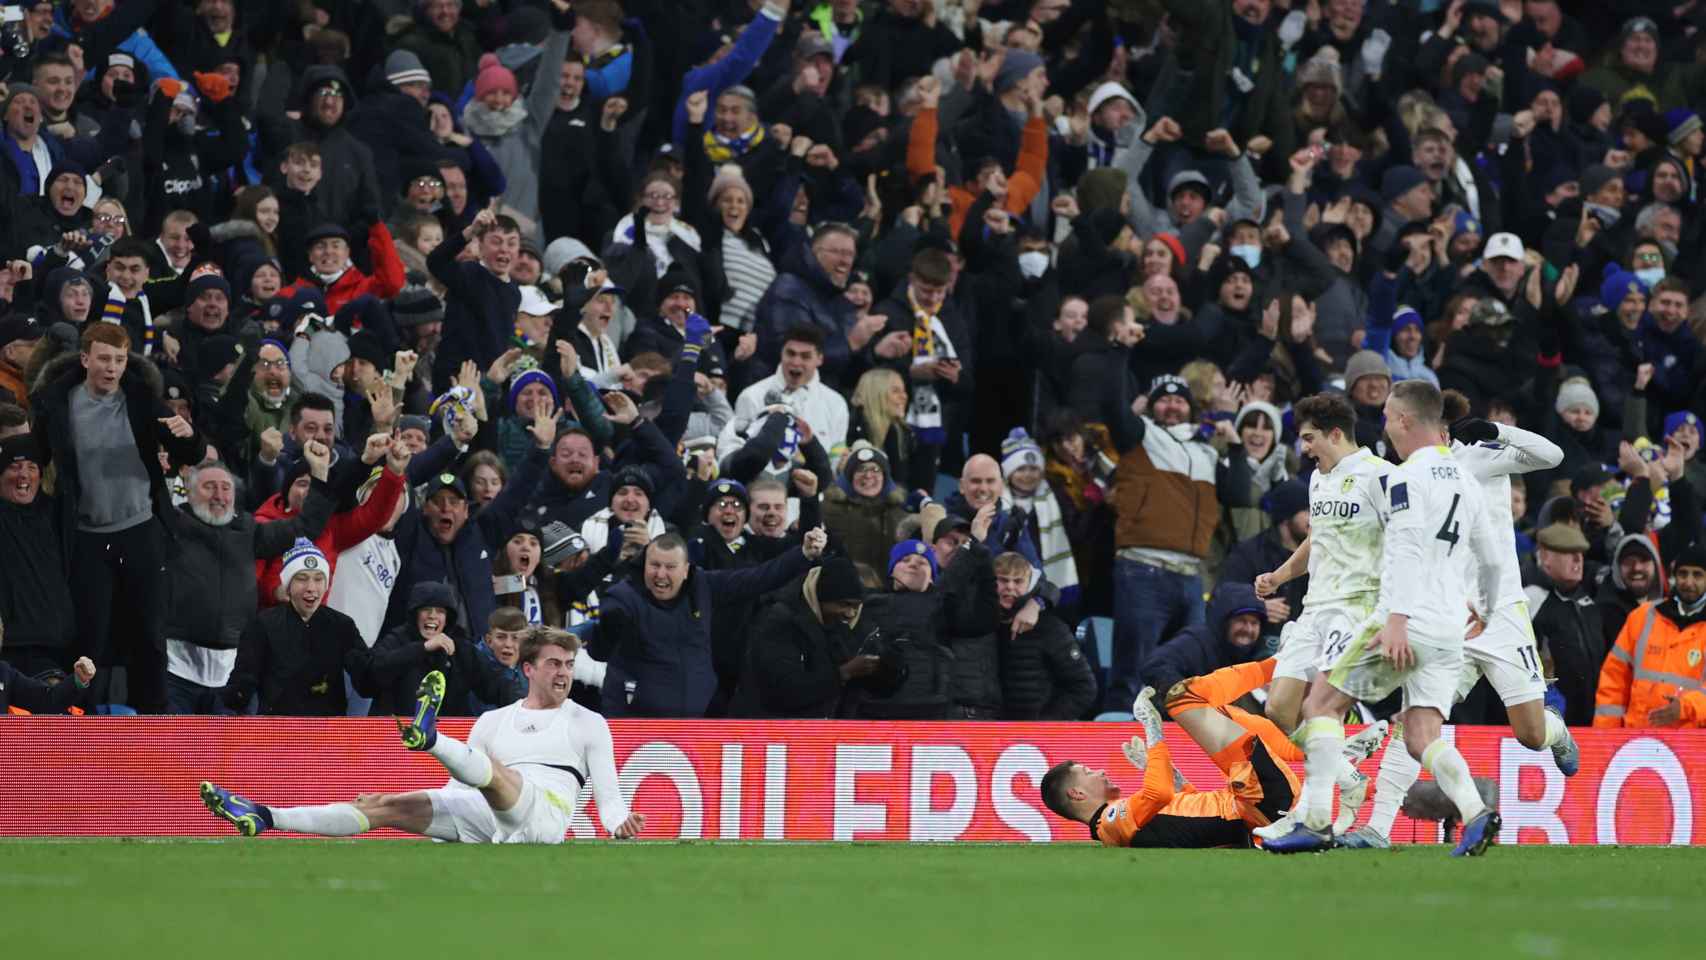 Los jugadores y la afición del Leeds United celebran un gol en la Premier League